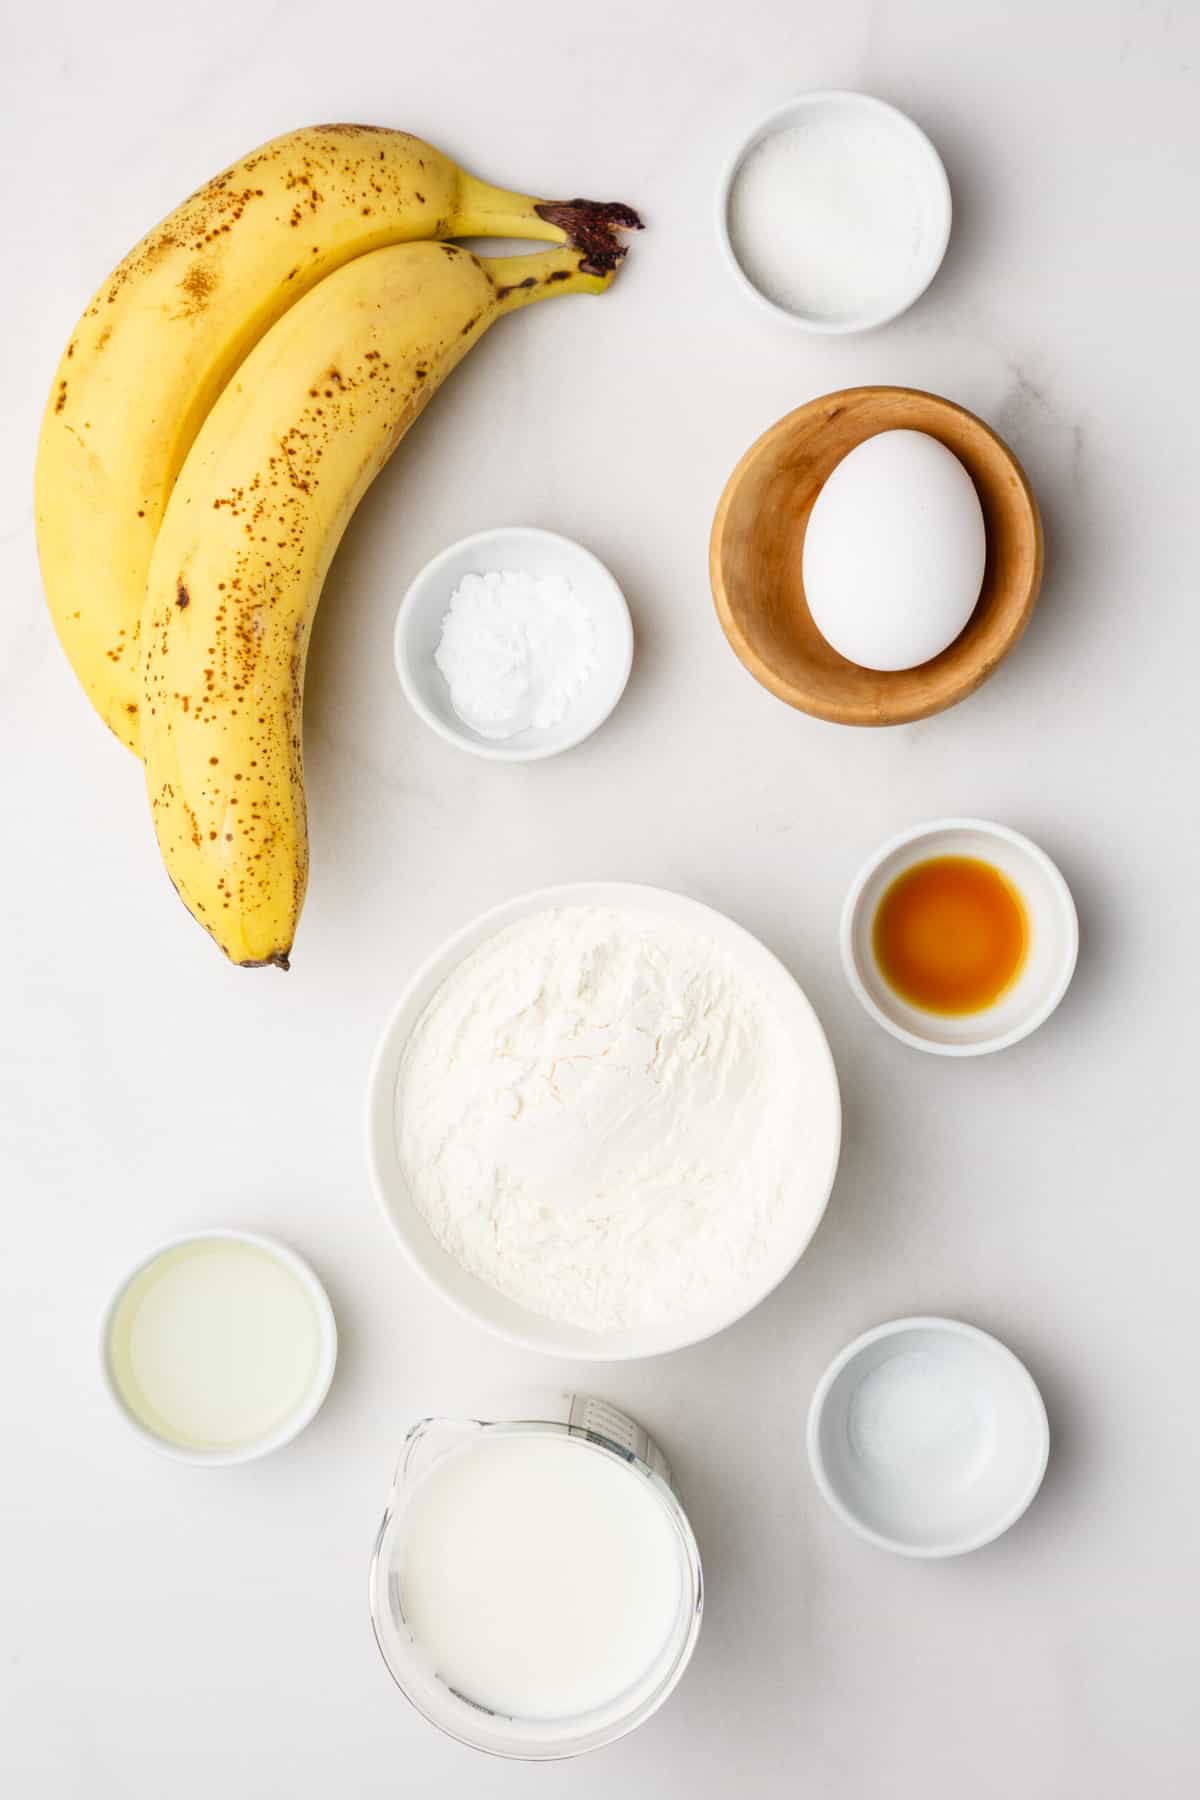 ingredients to make banana pancakes